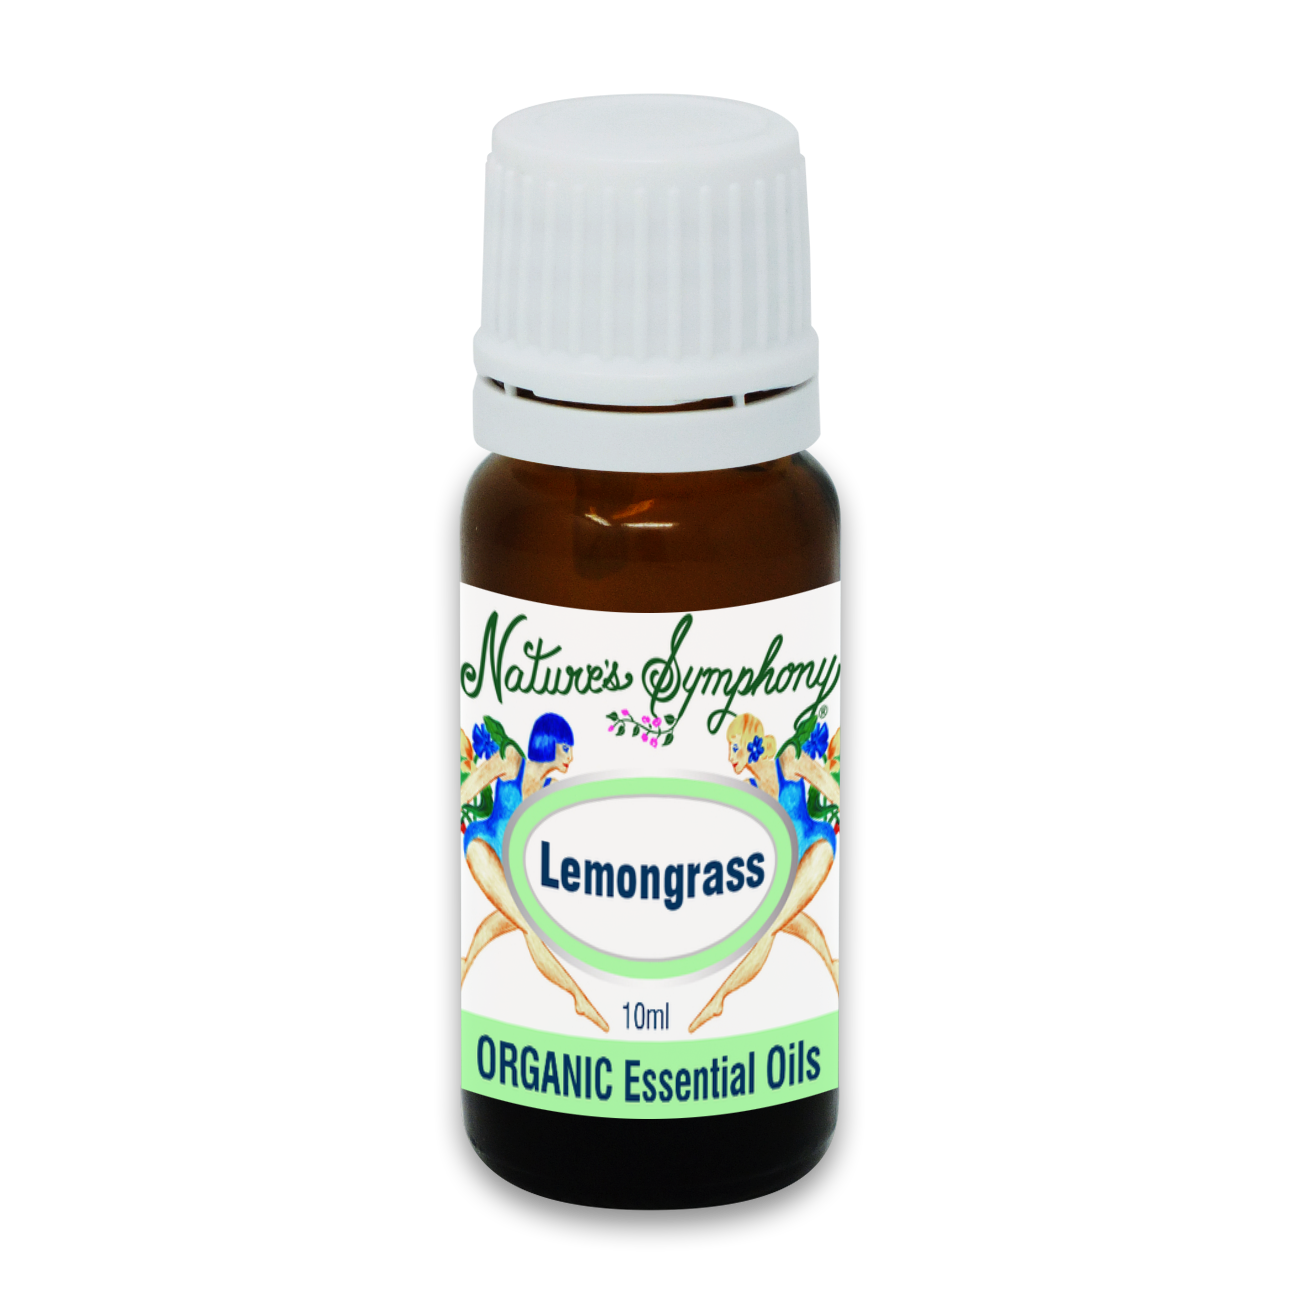 Lemongrass, Organic/Wildcrafted oil - 10ml